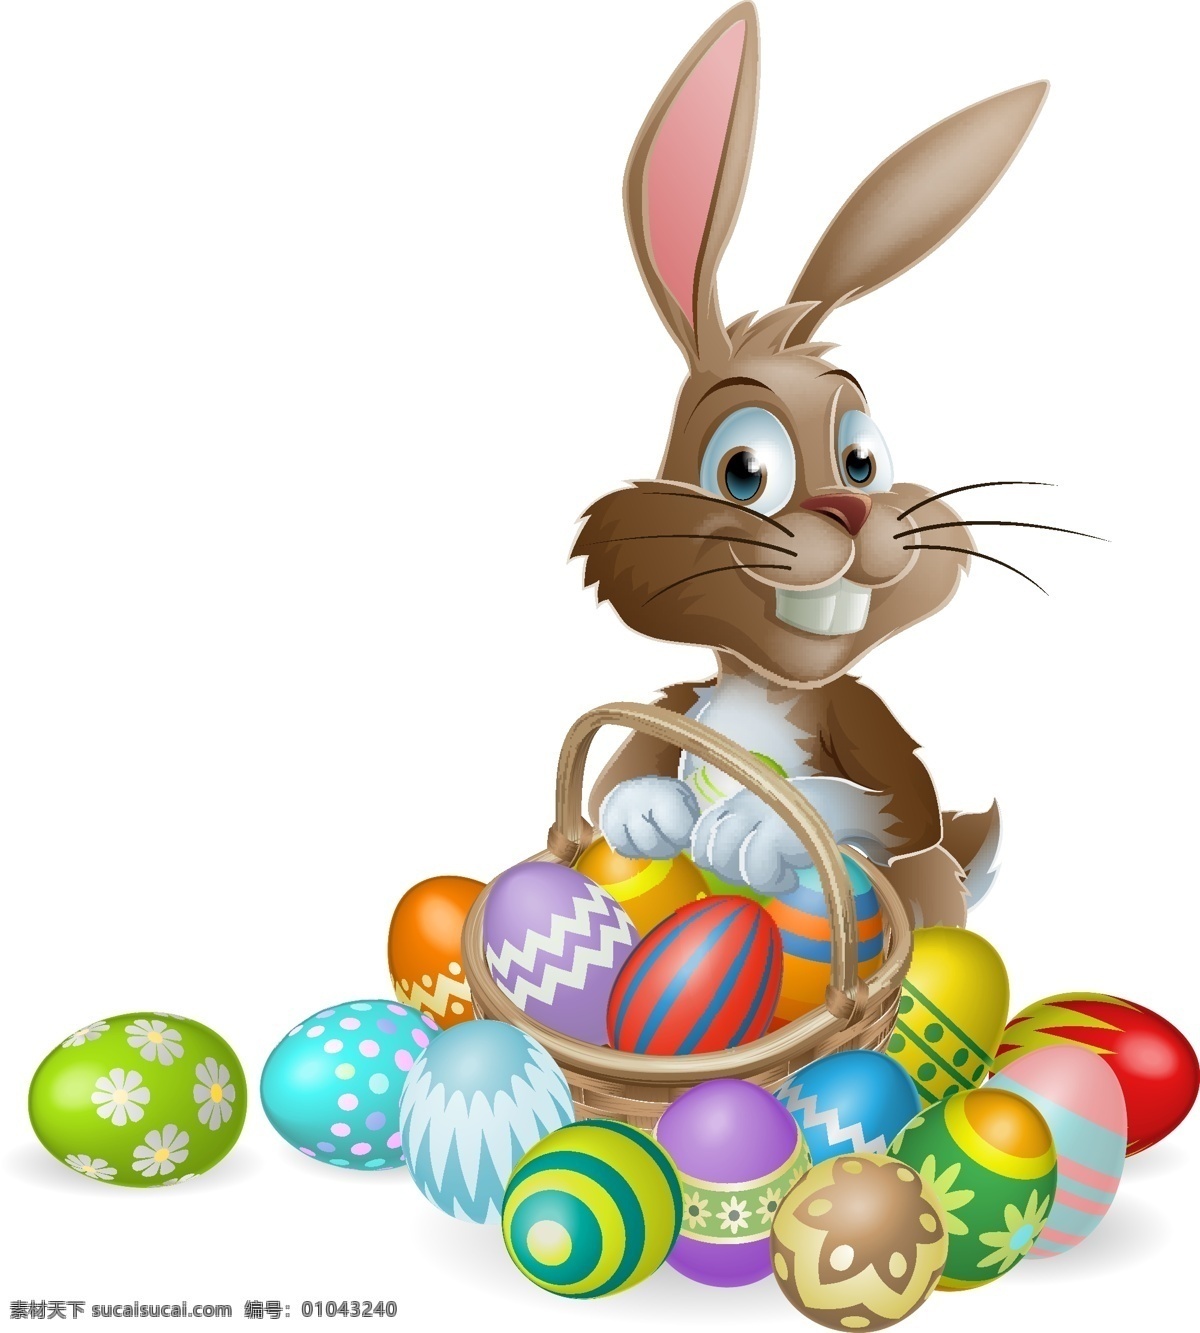 复活节 复活节海报 手绘 卡通兔子 鸡蛋 彩蛋 复活节背景 节日庆祝 文化艺术 矢量